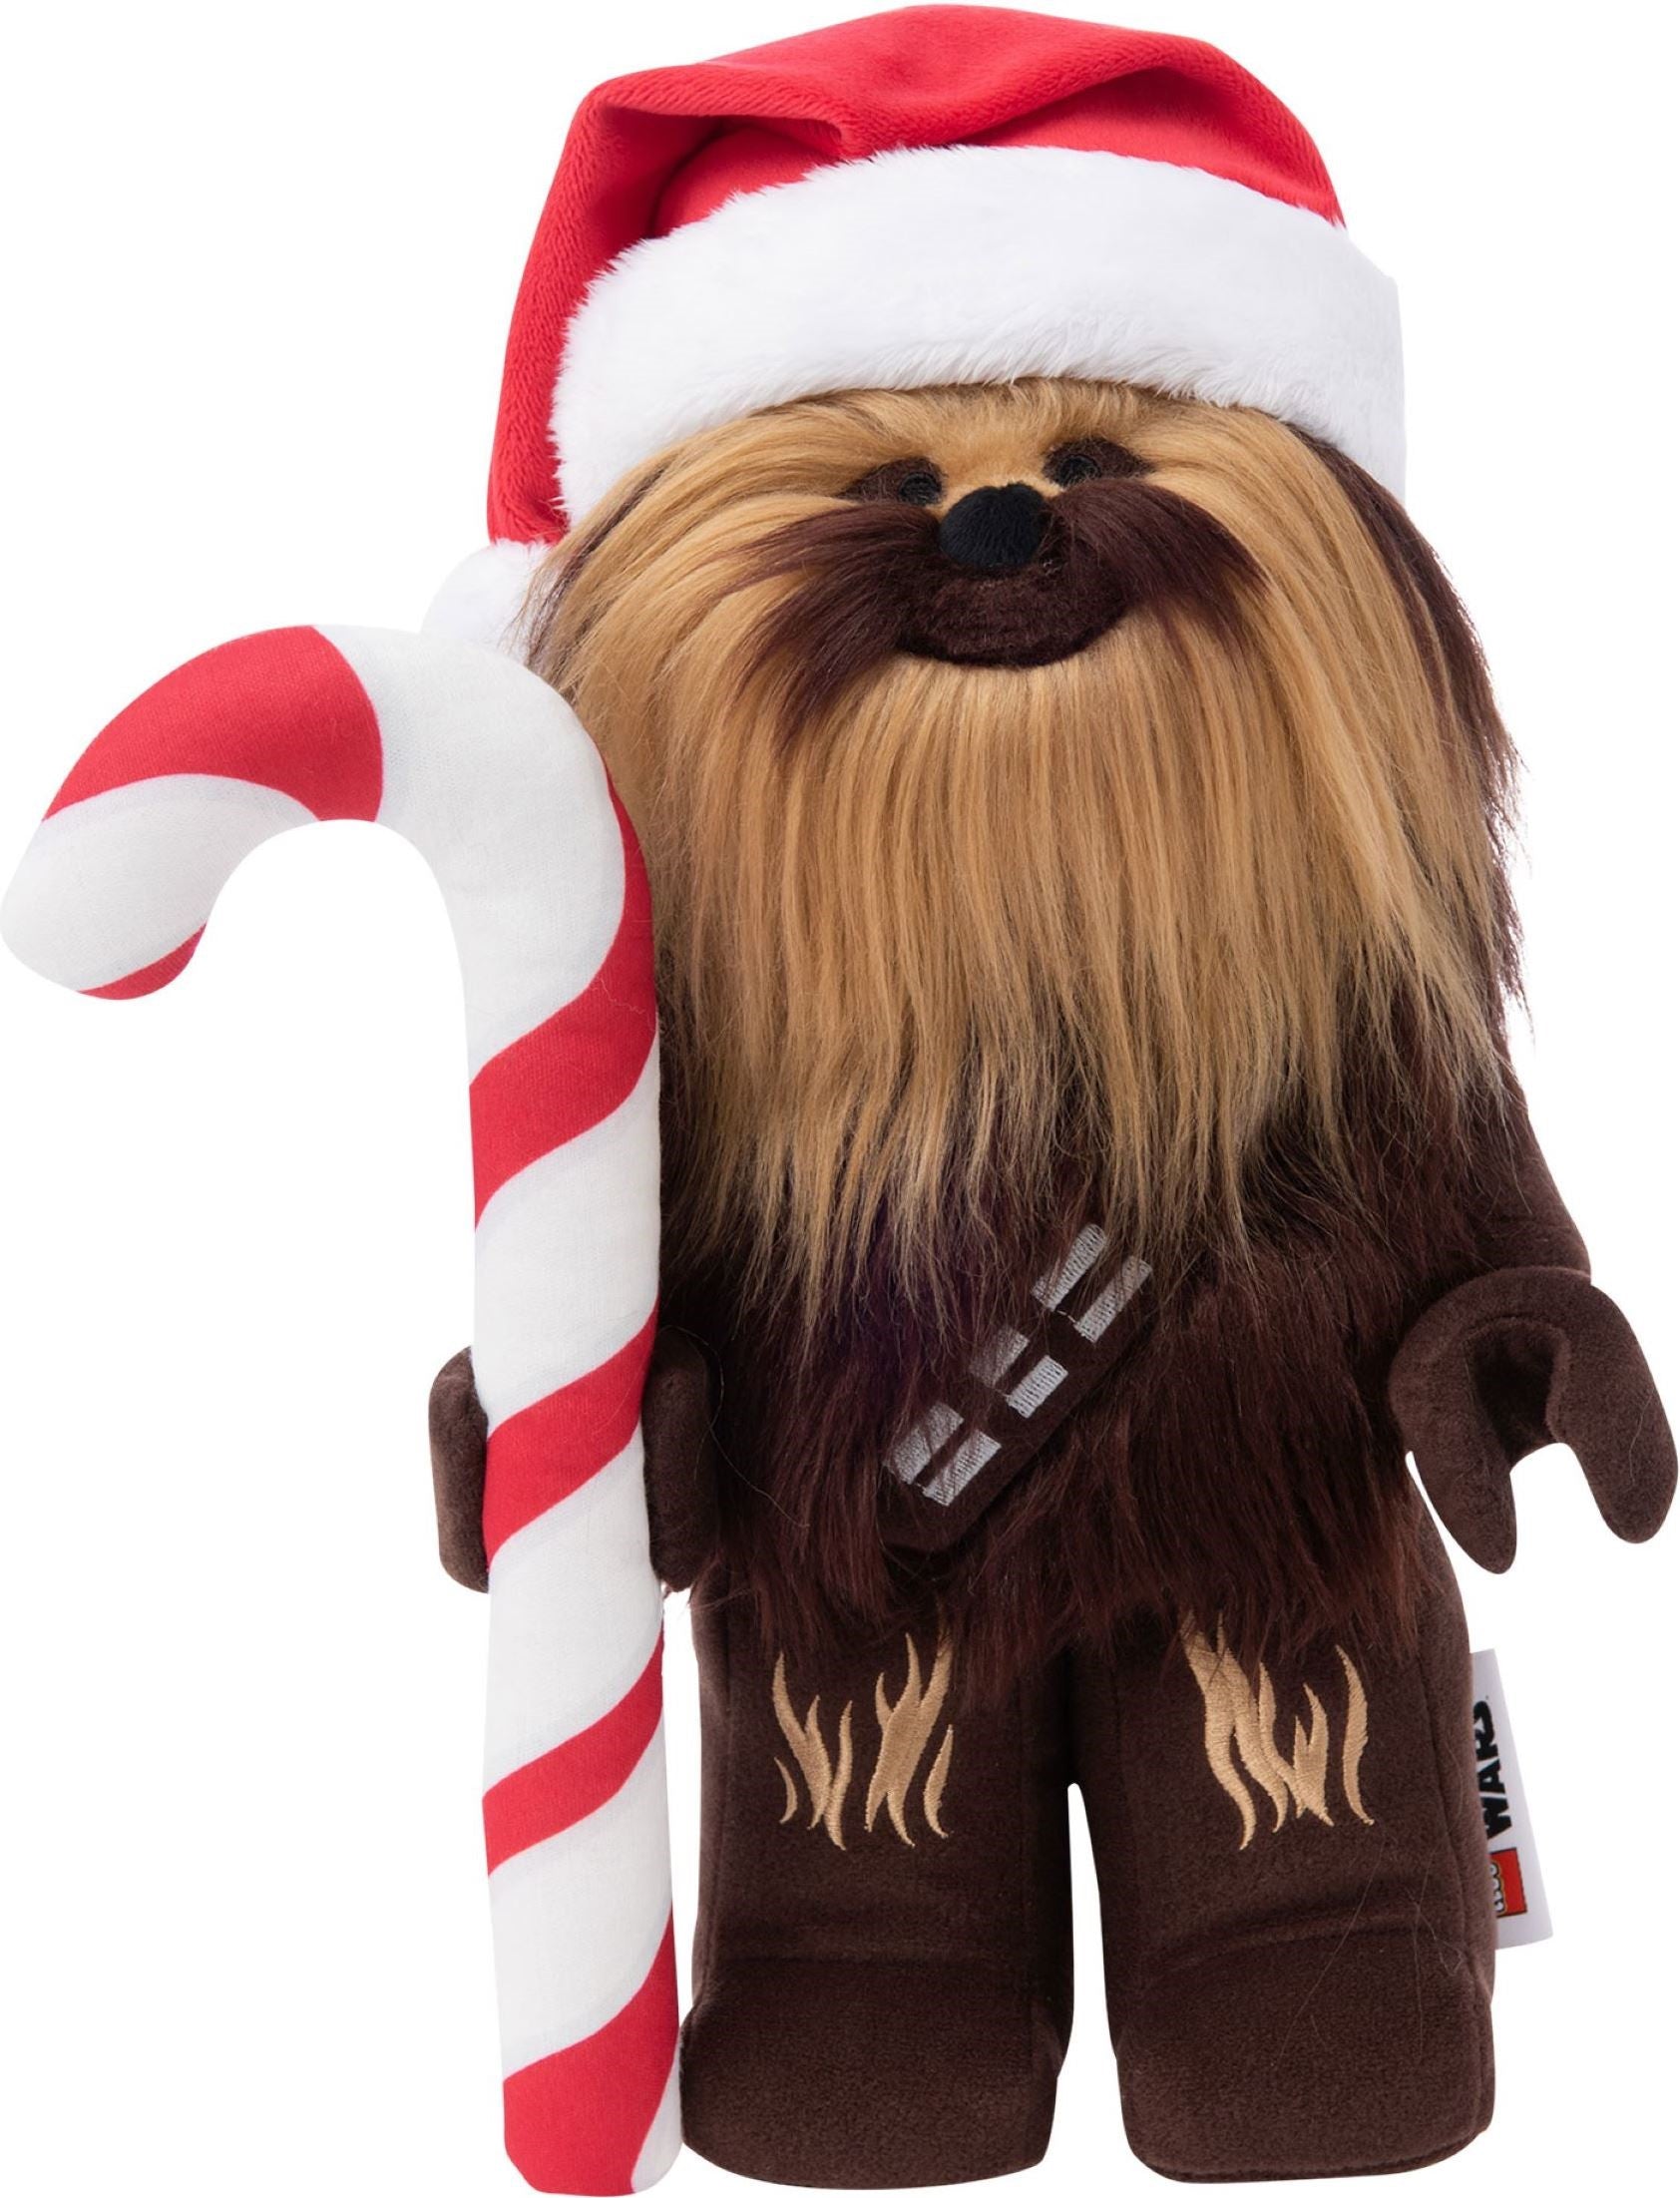 Lego Star Wars 5007464 - Chewbacca Holiday Plush